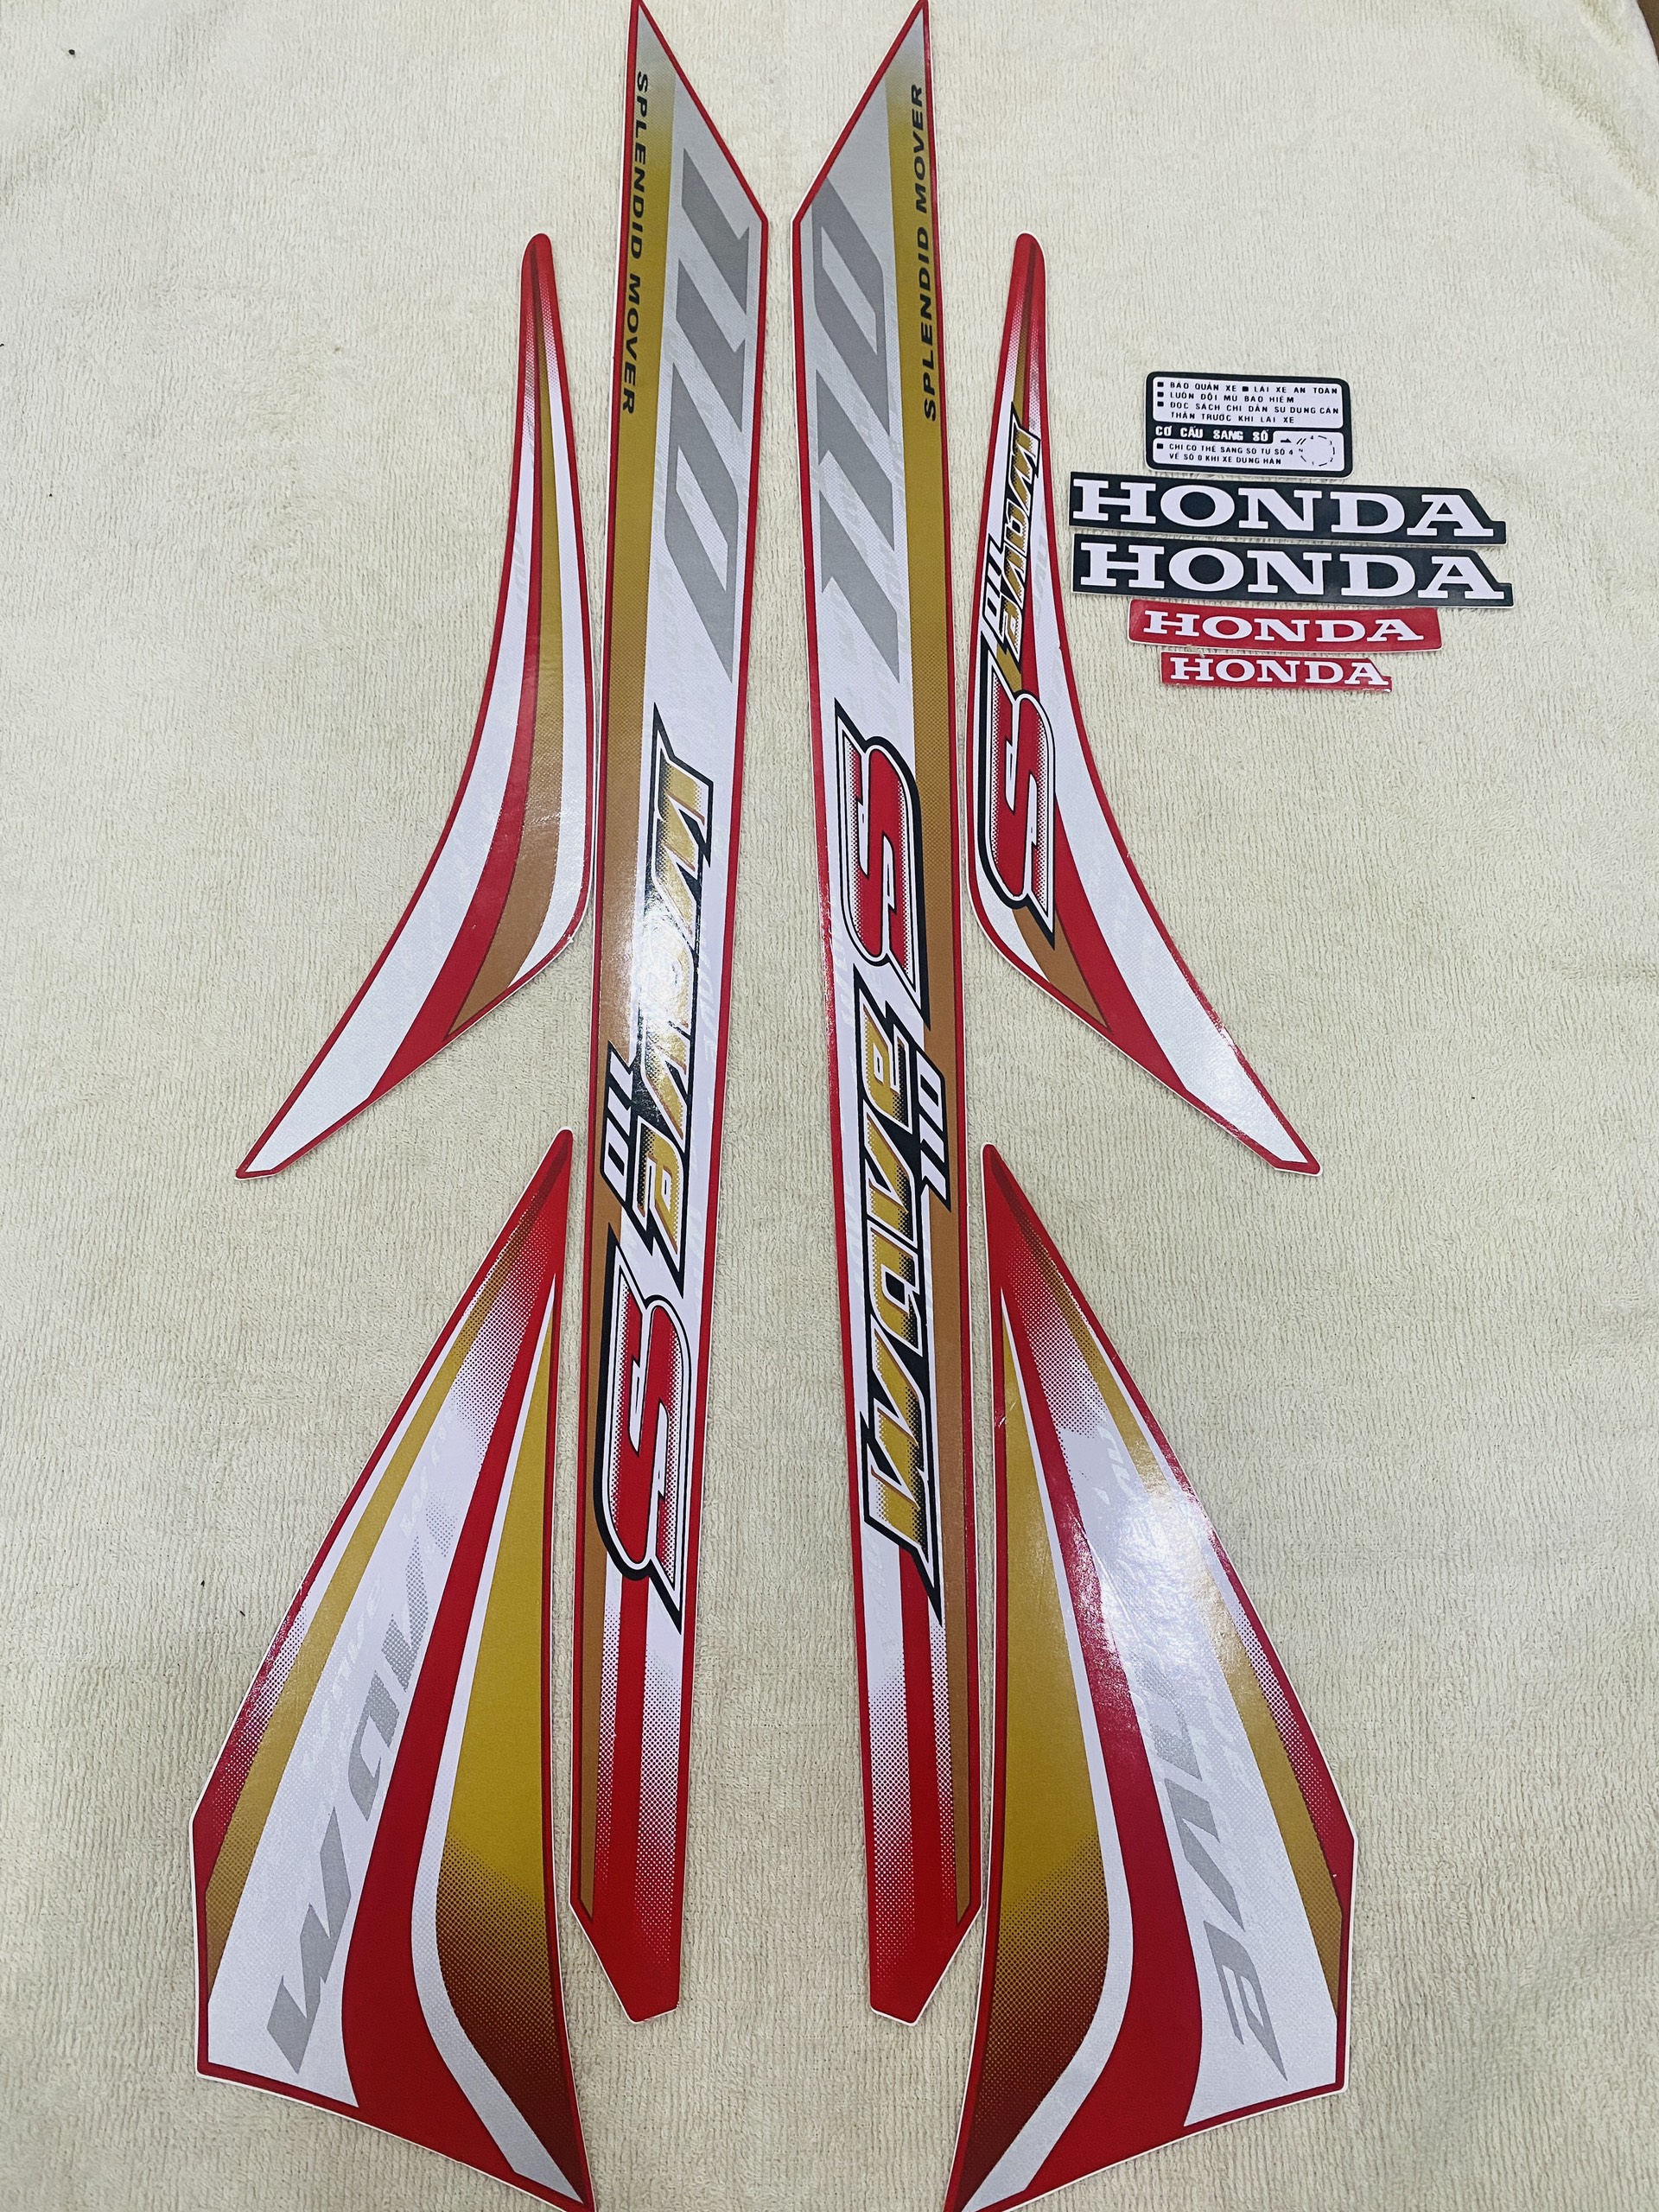 Bộ tem decal dán xe máy Honda wave S110 đời 2012 màu đỏ zin thái siêu đẹp